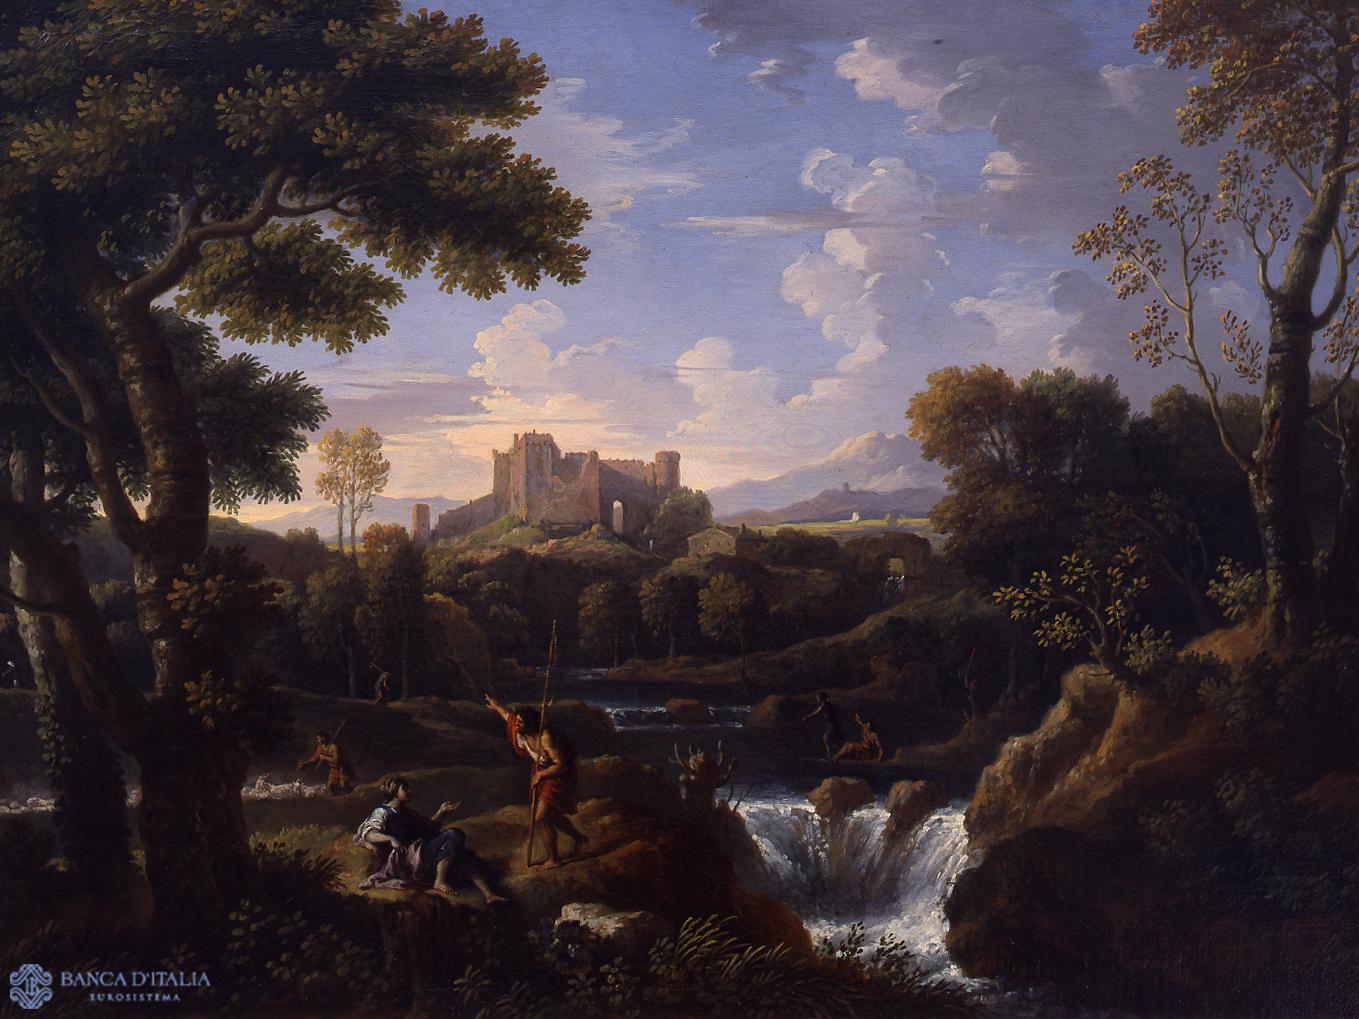 River Landscape with Castle Ruins